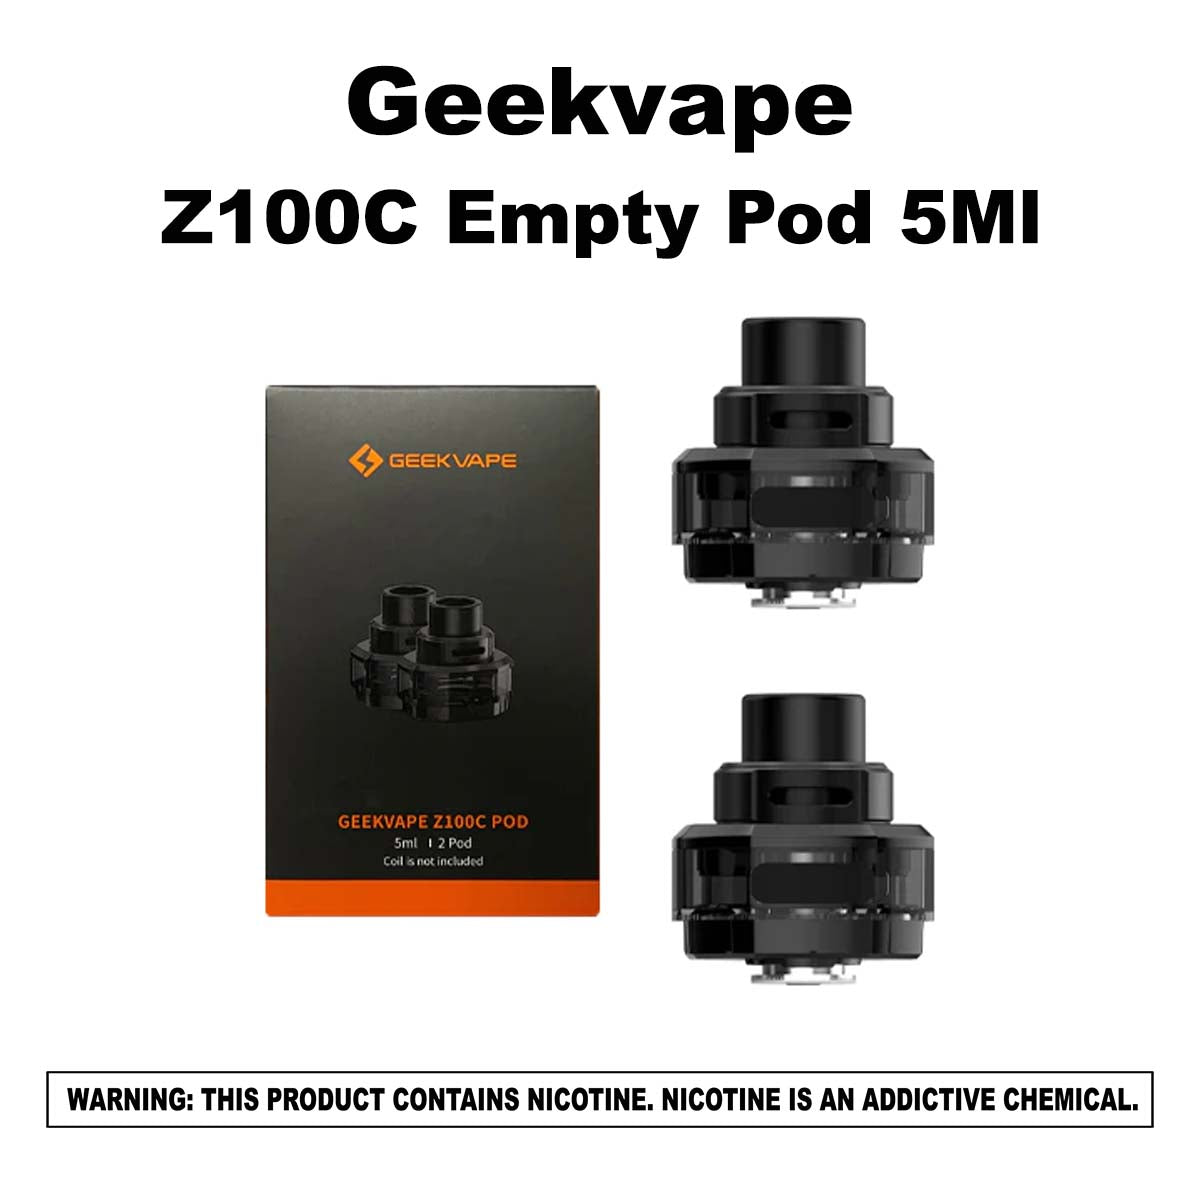 Geekvape Z100C Empty Pod 5Ml